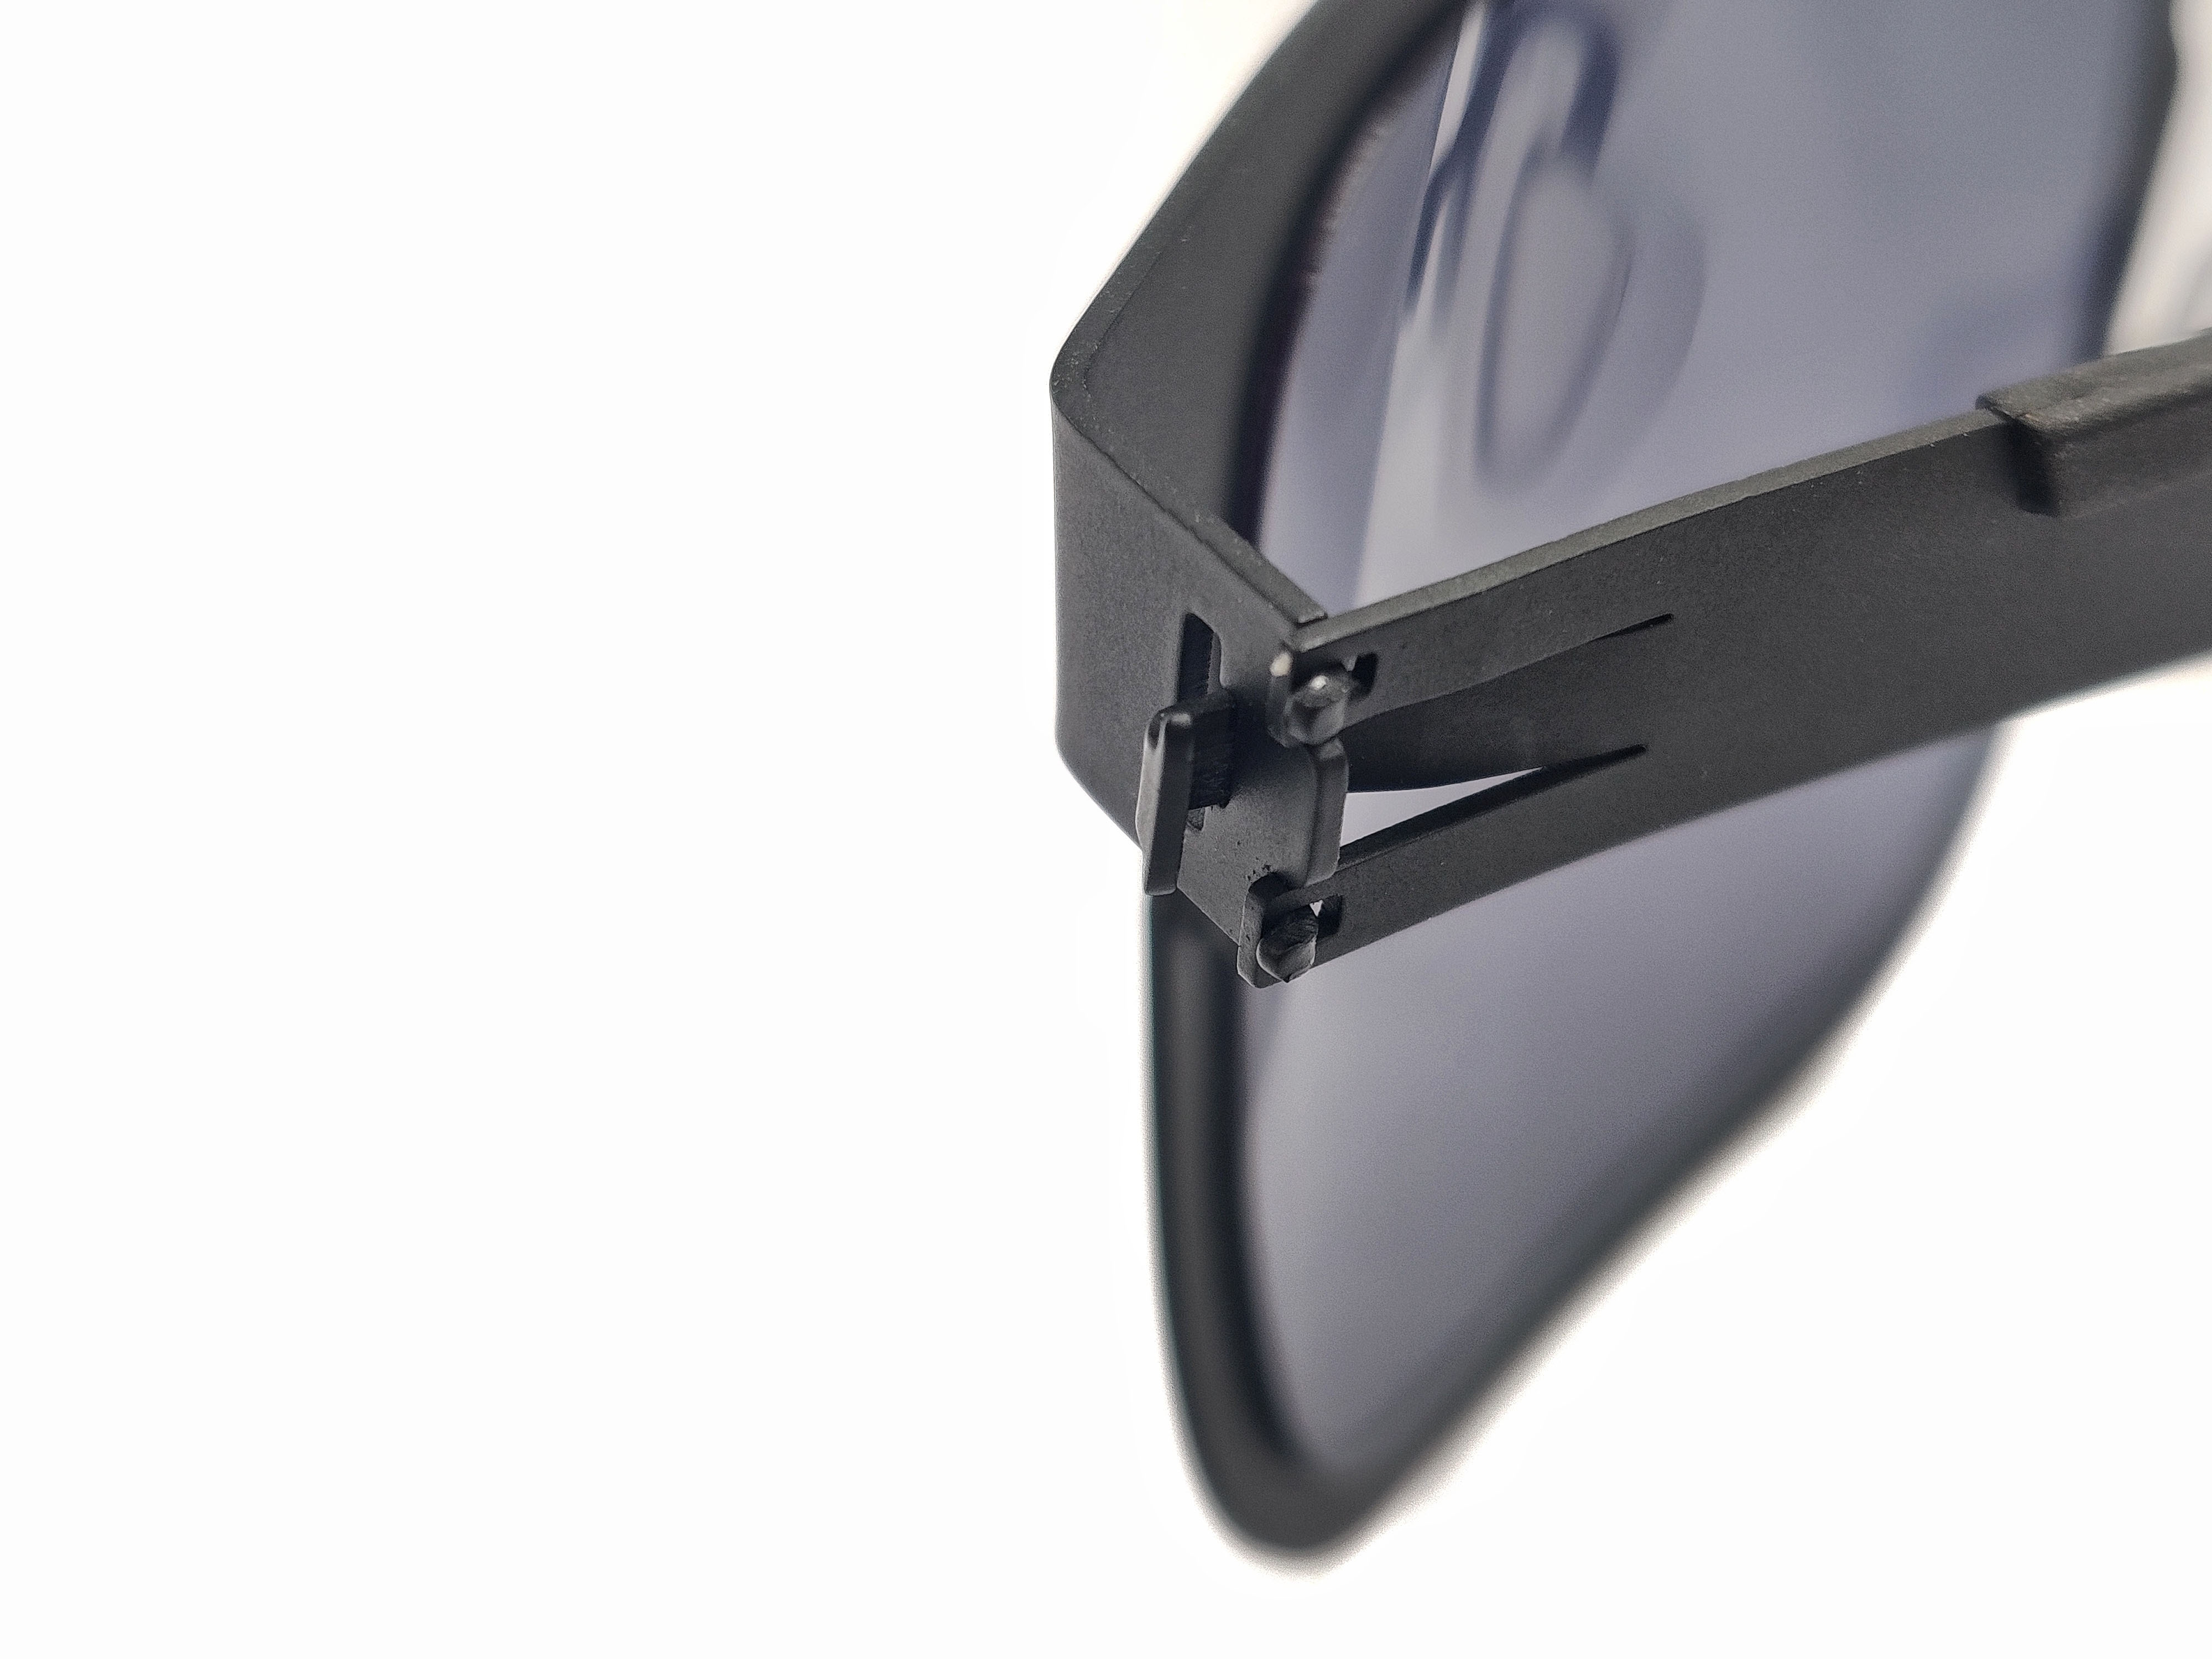 Gafas de sol cuadradas finas de acero para hombres Gafas Gensun Fabricantes de gafas más grandes Fabricantes chinos de gafas de sol